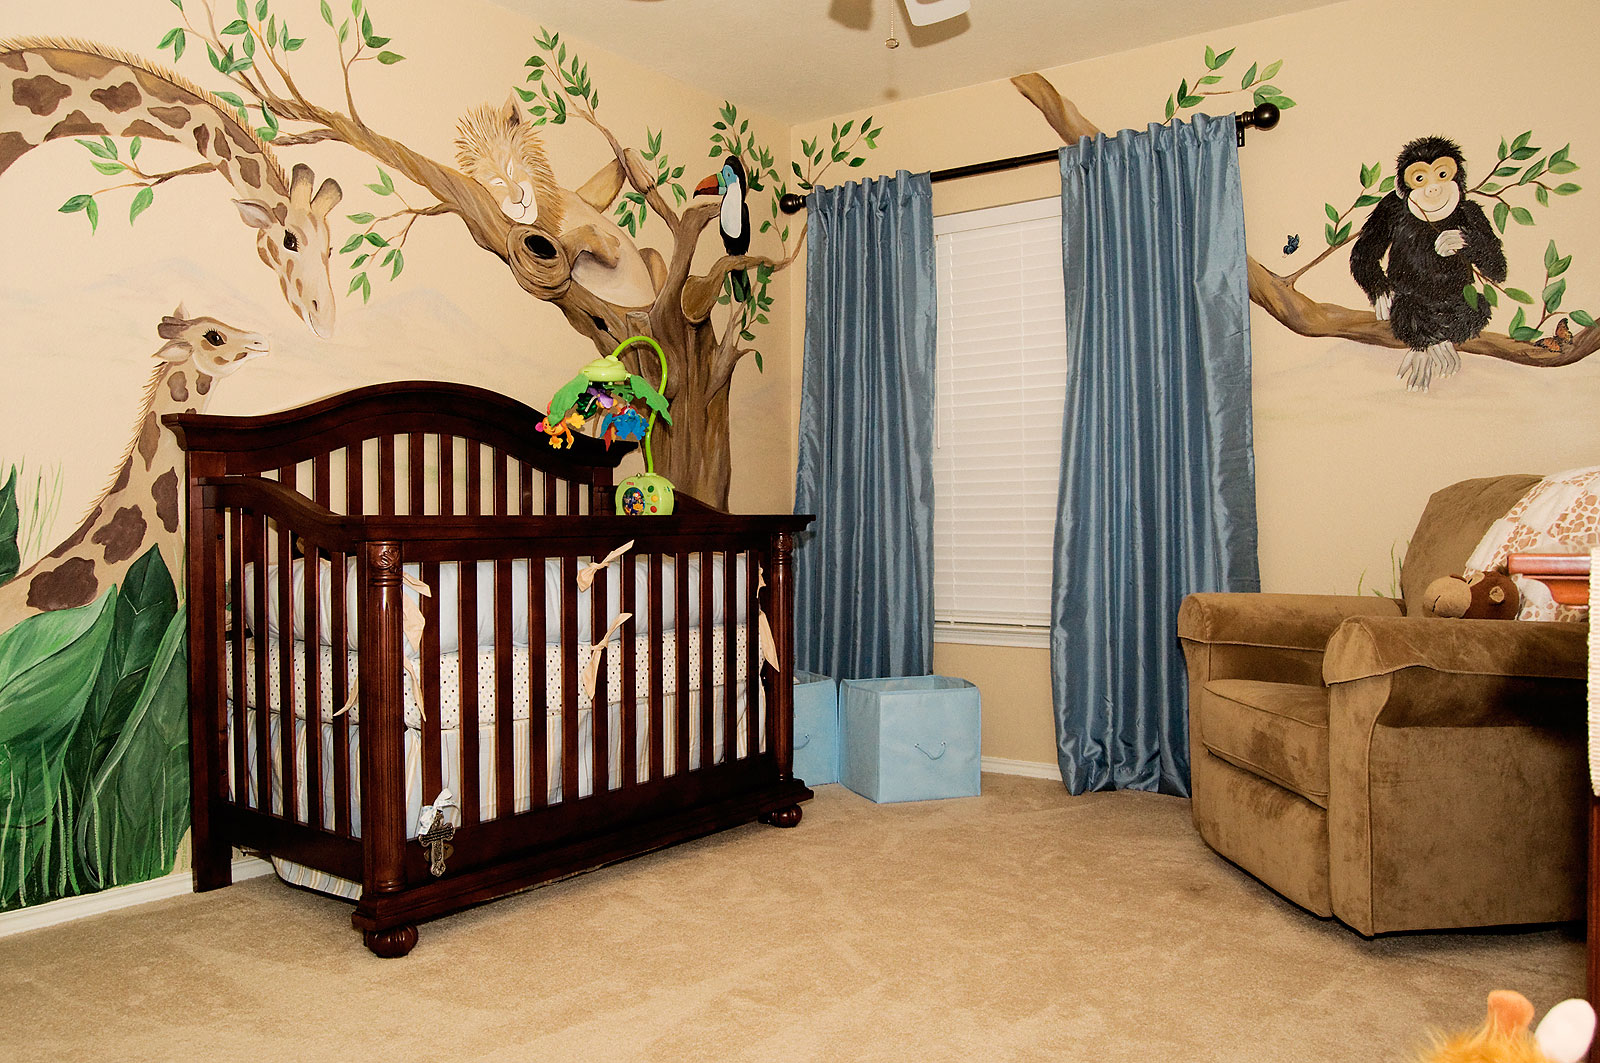 Cute baby room